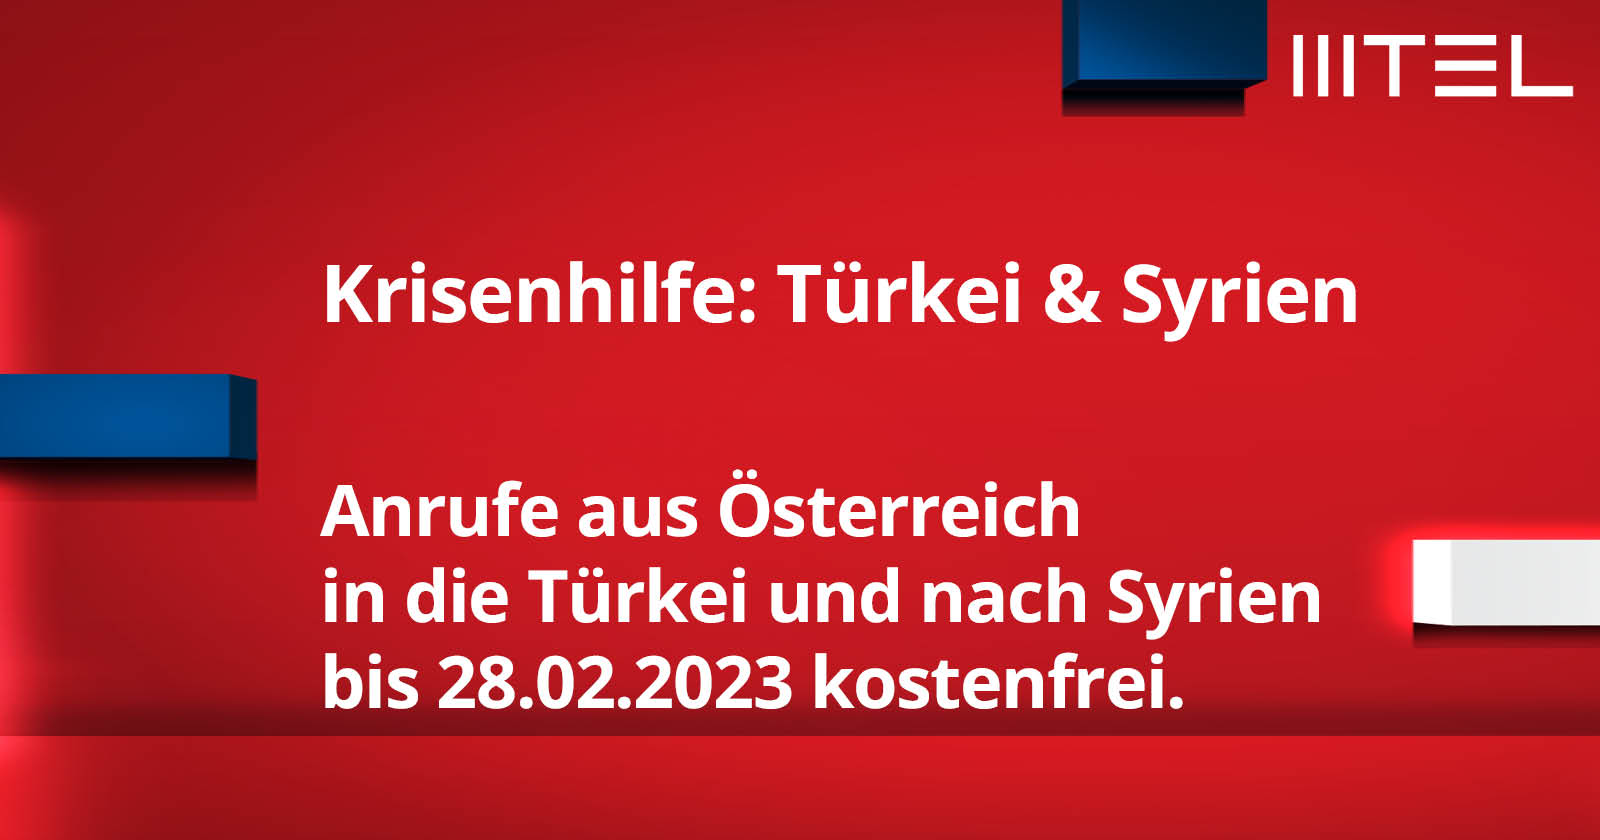 MTEL Krisenhilfe: Türkei & Syrien